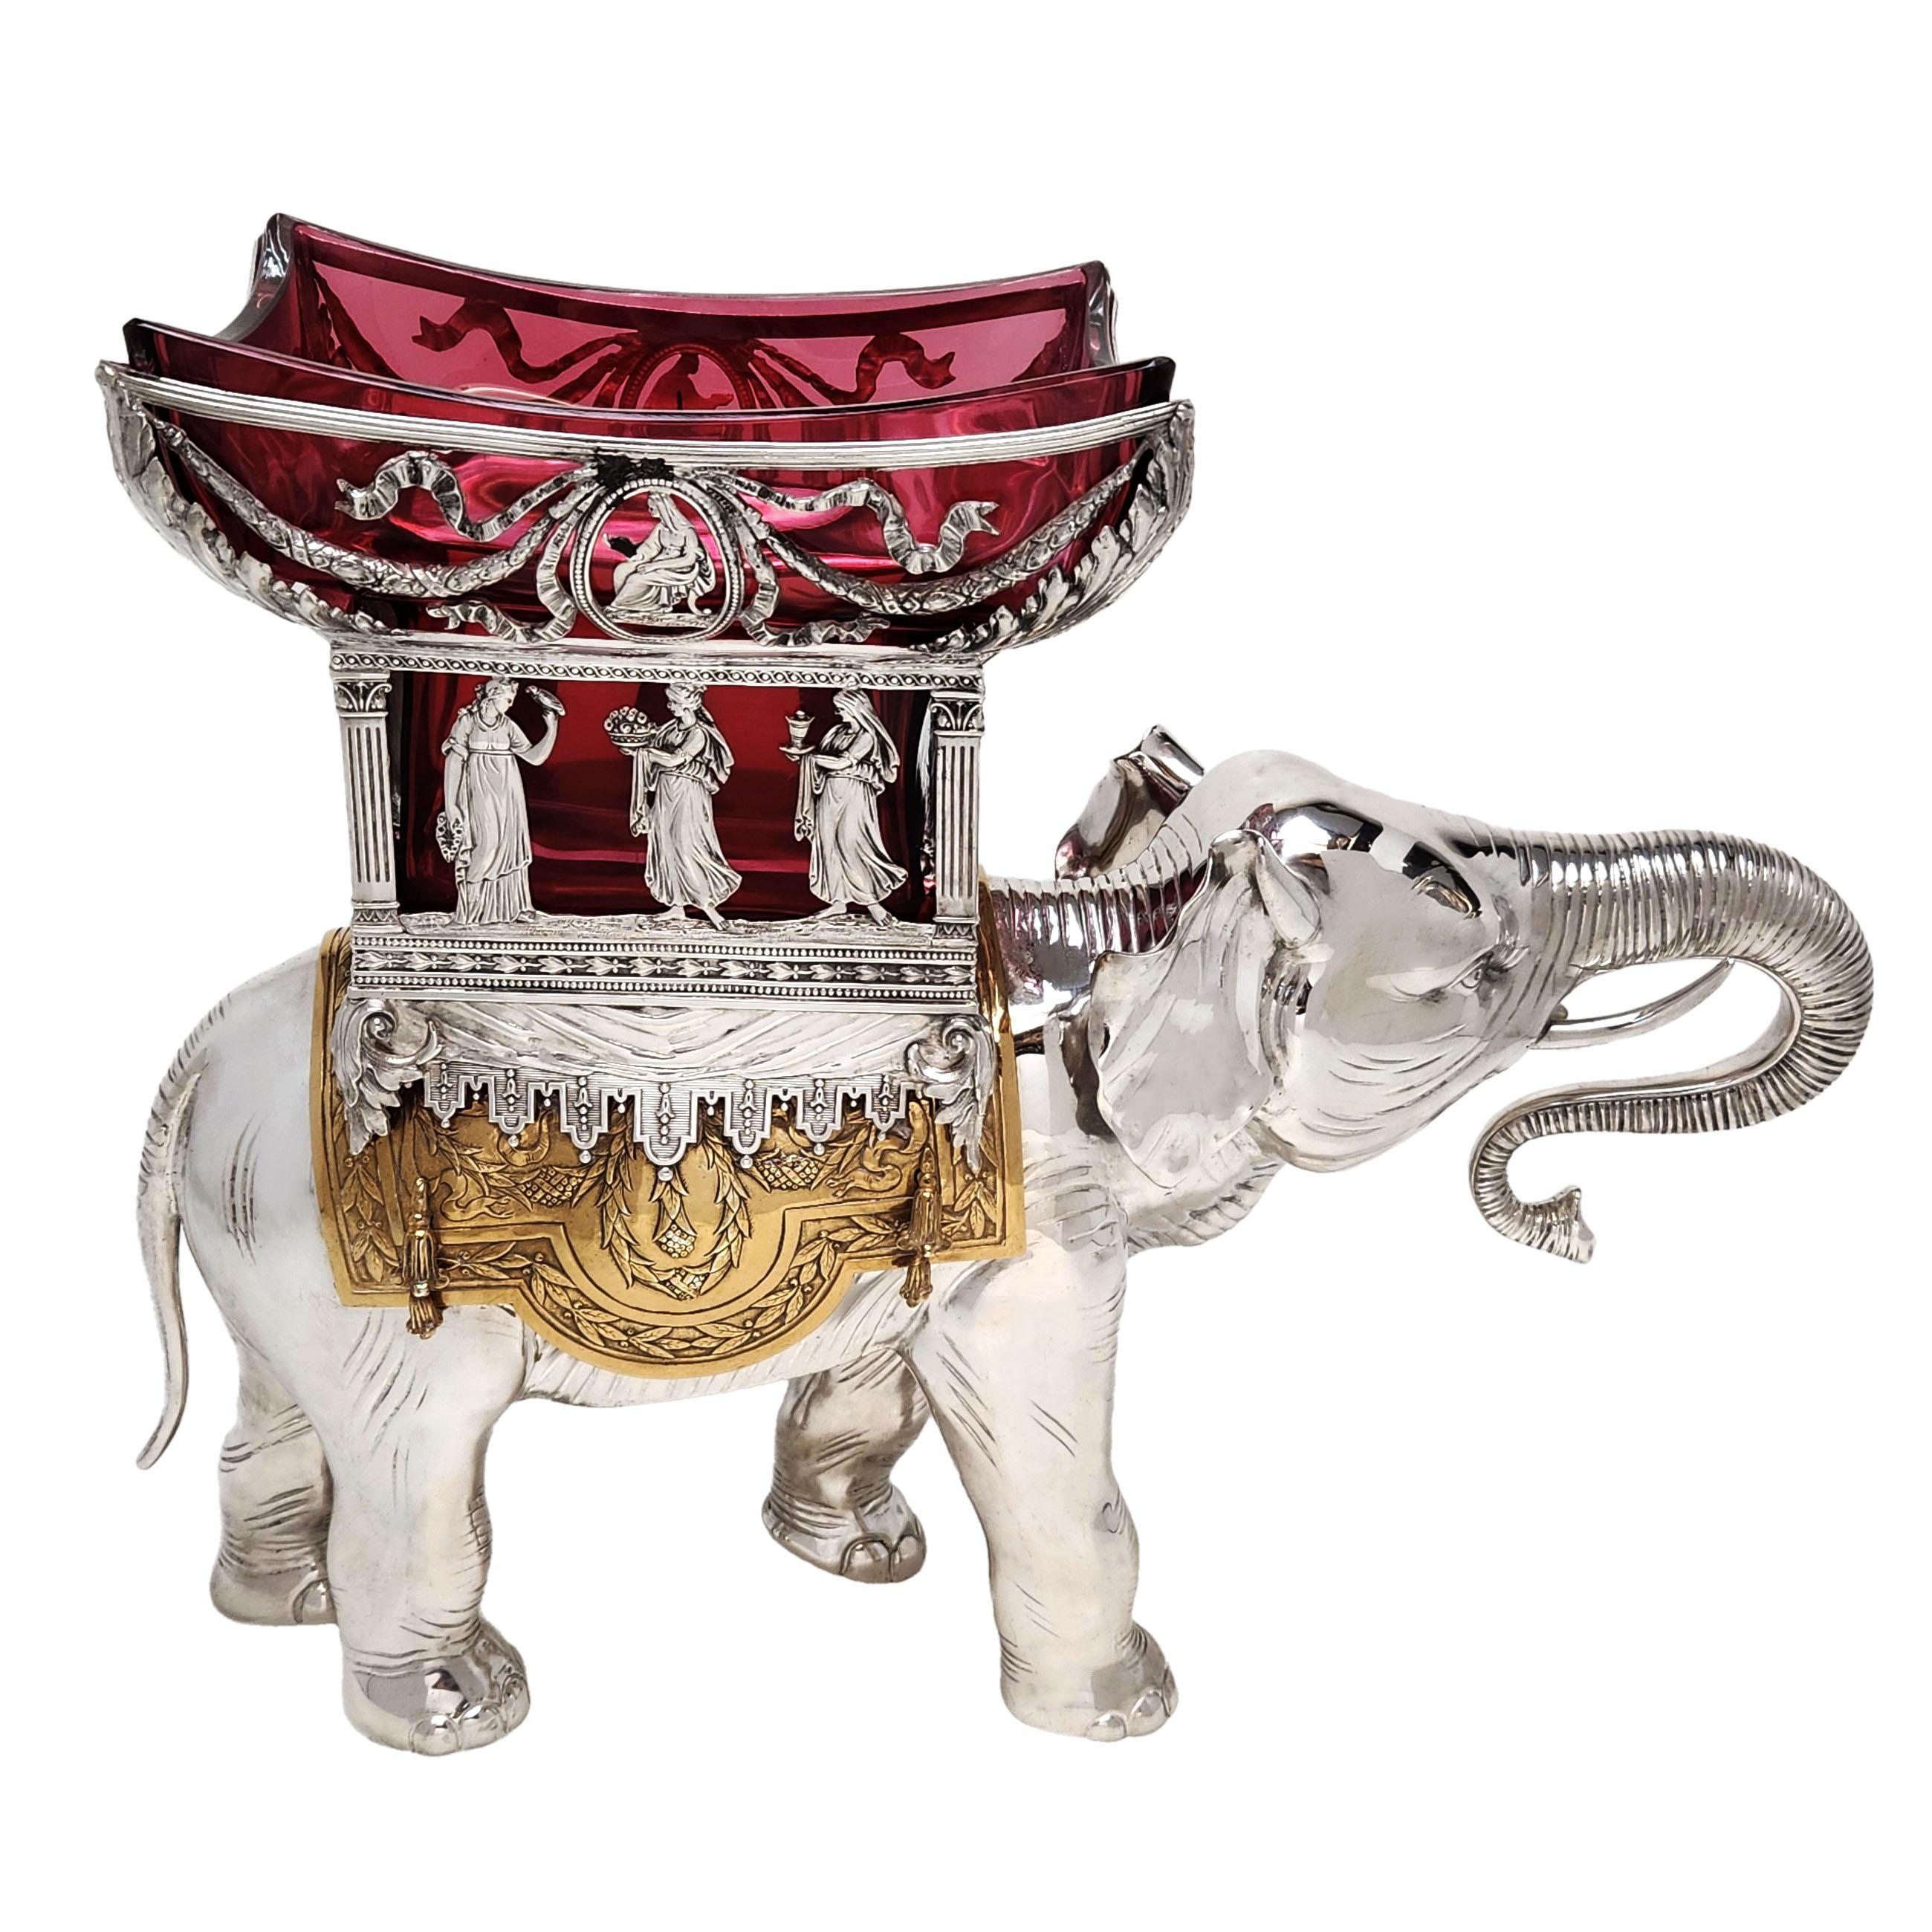 Un magnifique centre de table éléphant en argent massif supportant une selle dorée avec un grand bol en verre rouge dans un panier en argent percé. Le panier est orné d'un bandeau de figures classiques et d'un motif de houppe et de nœud avec des